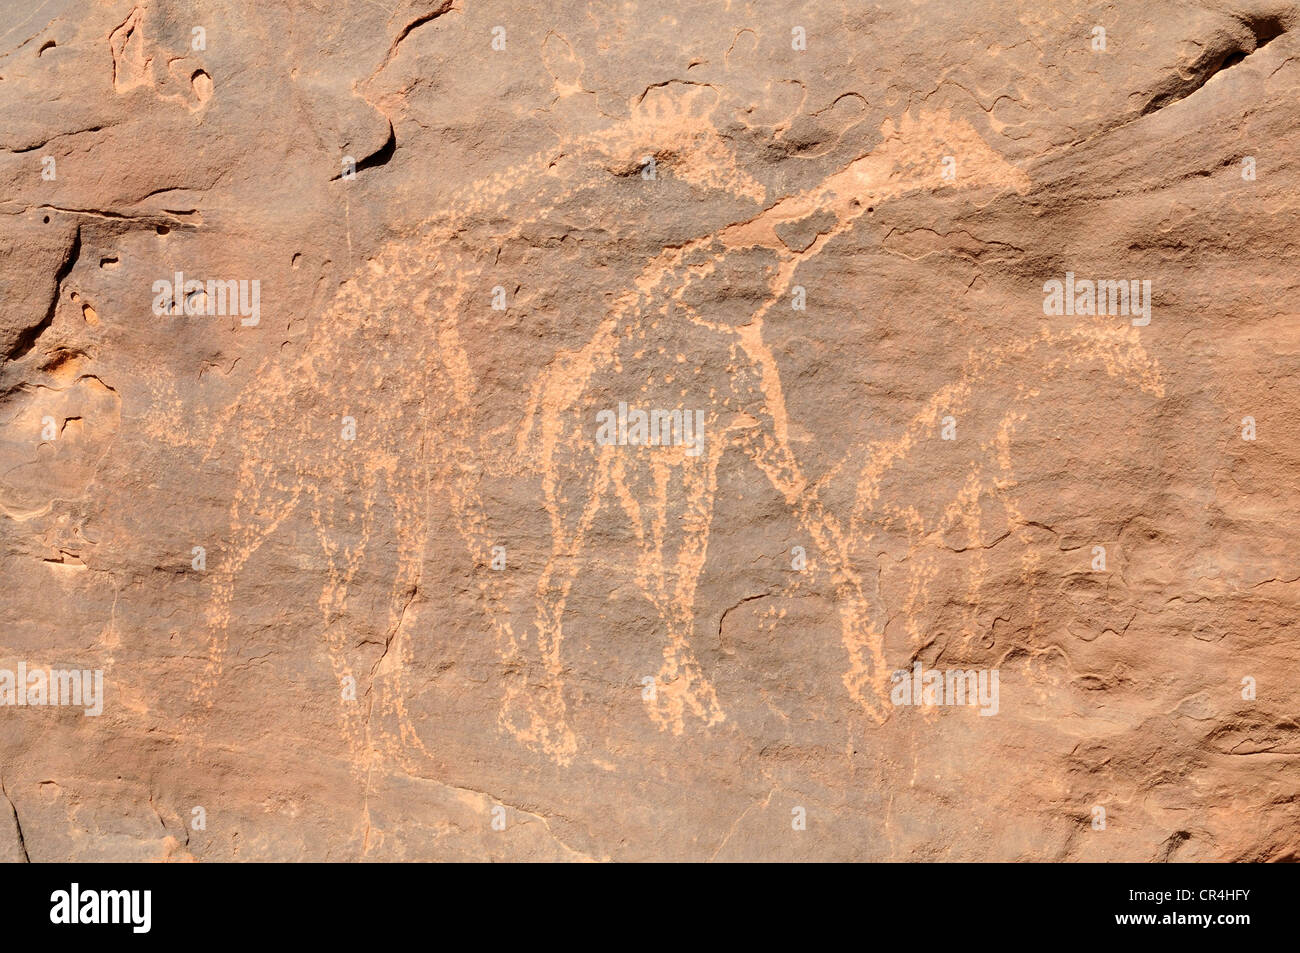 La gravure, la girafe de l'Acacus néolithique rockart Montagnes ou gamme Tadrart Acacus, Tassili n'Ajjer National Park Banque D'Images